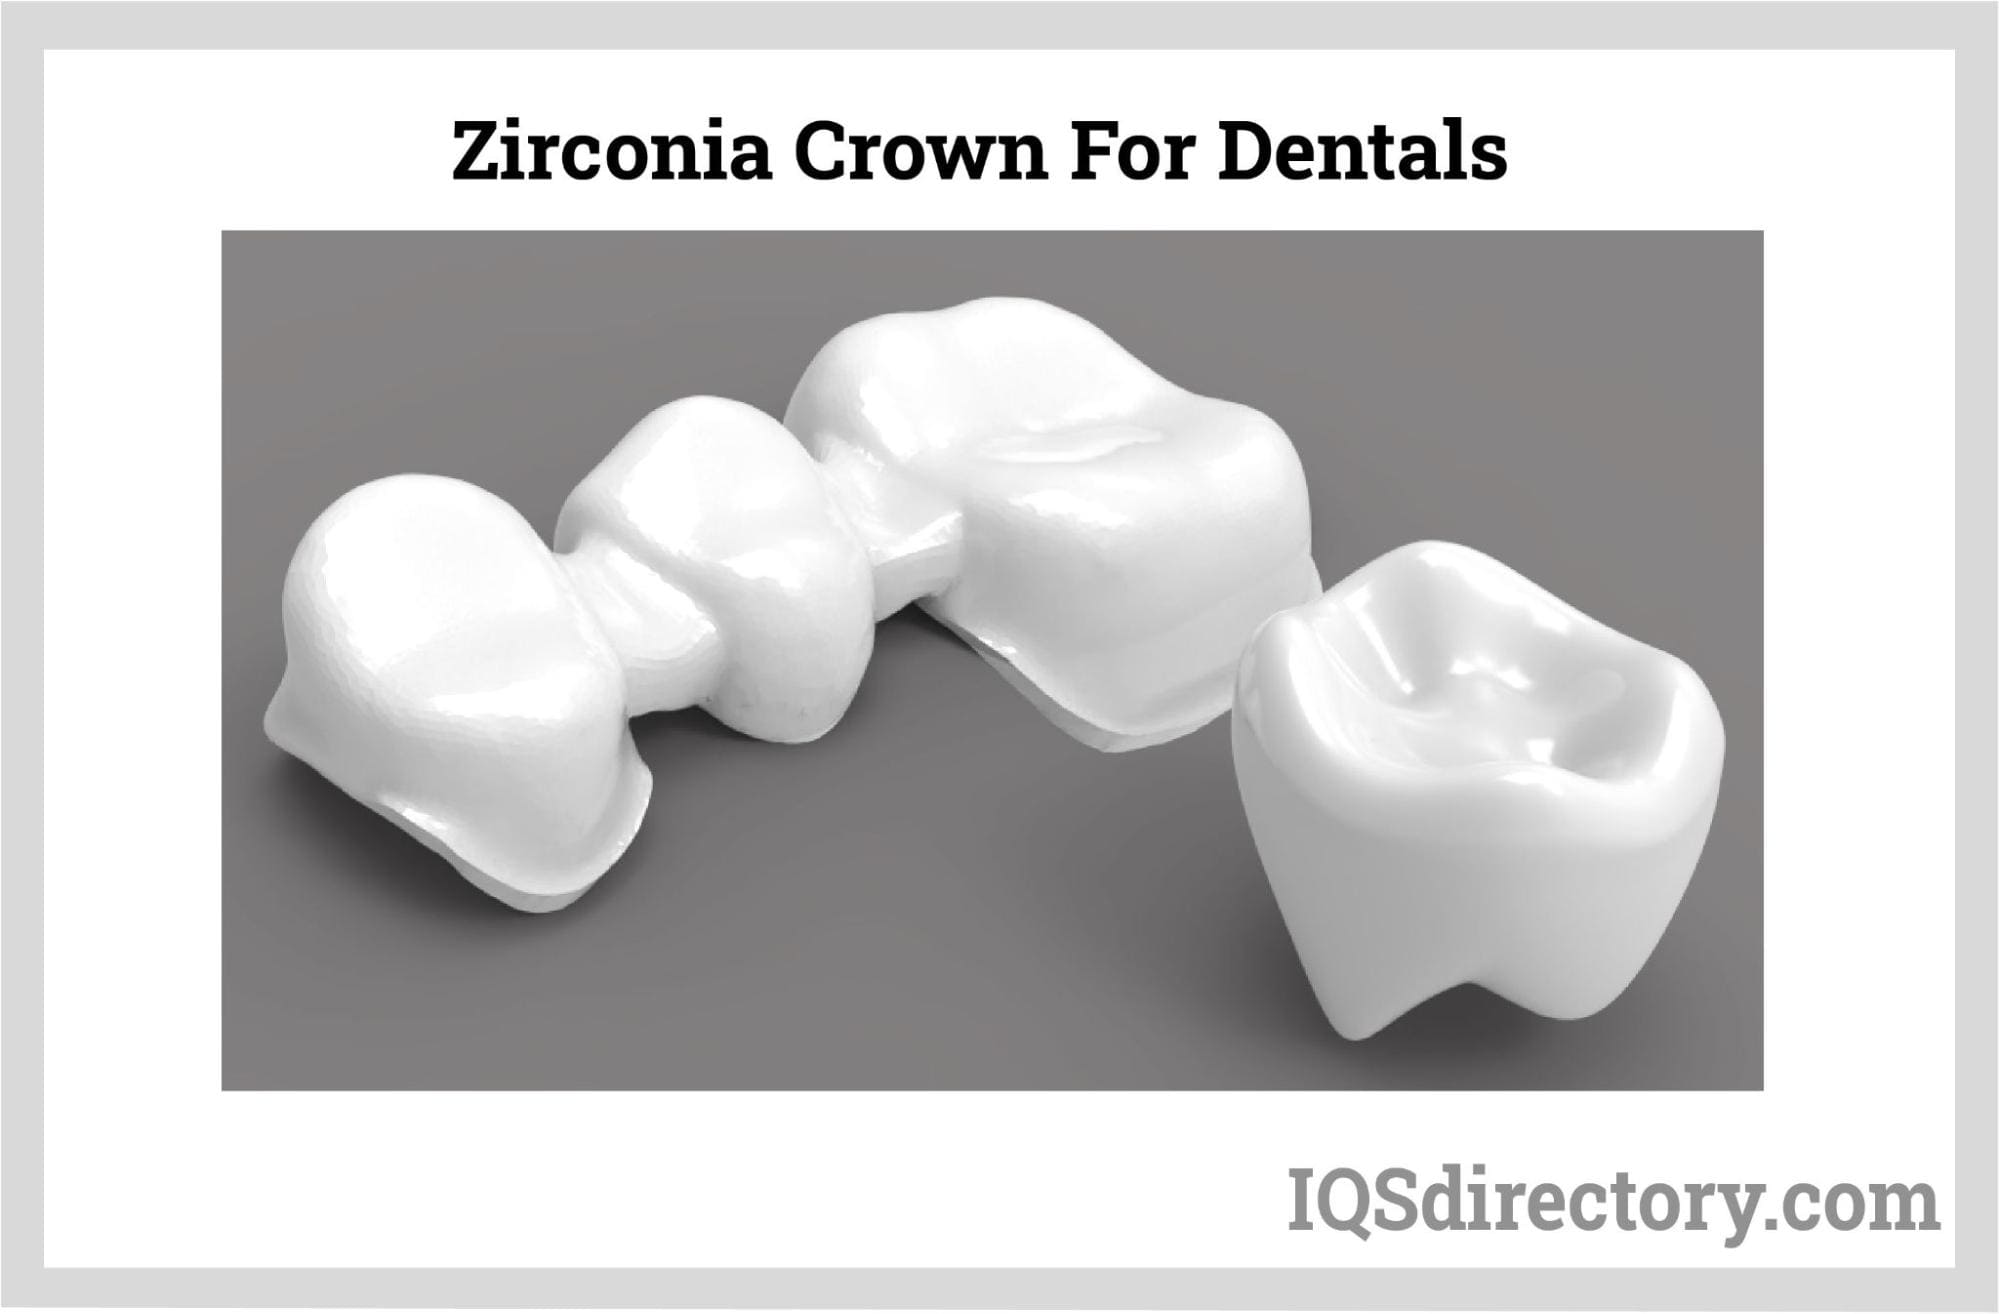 zirconia crown for dentals